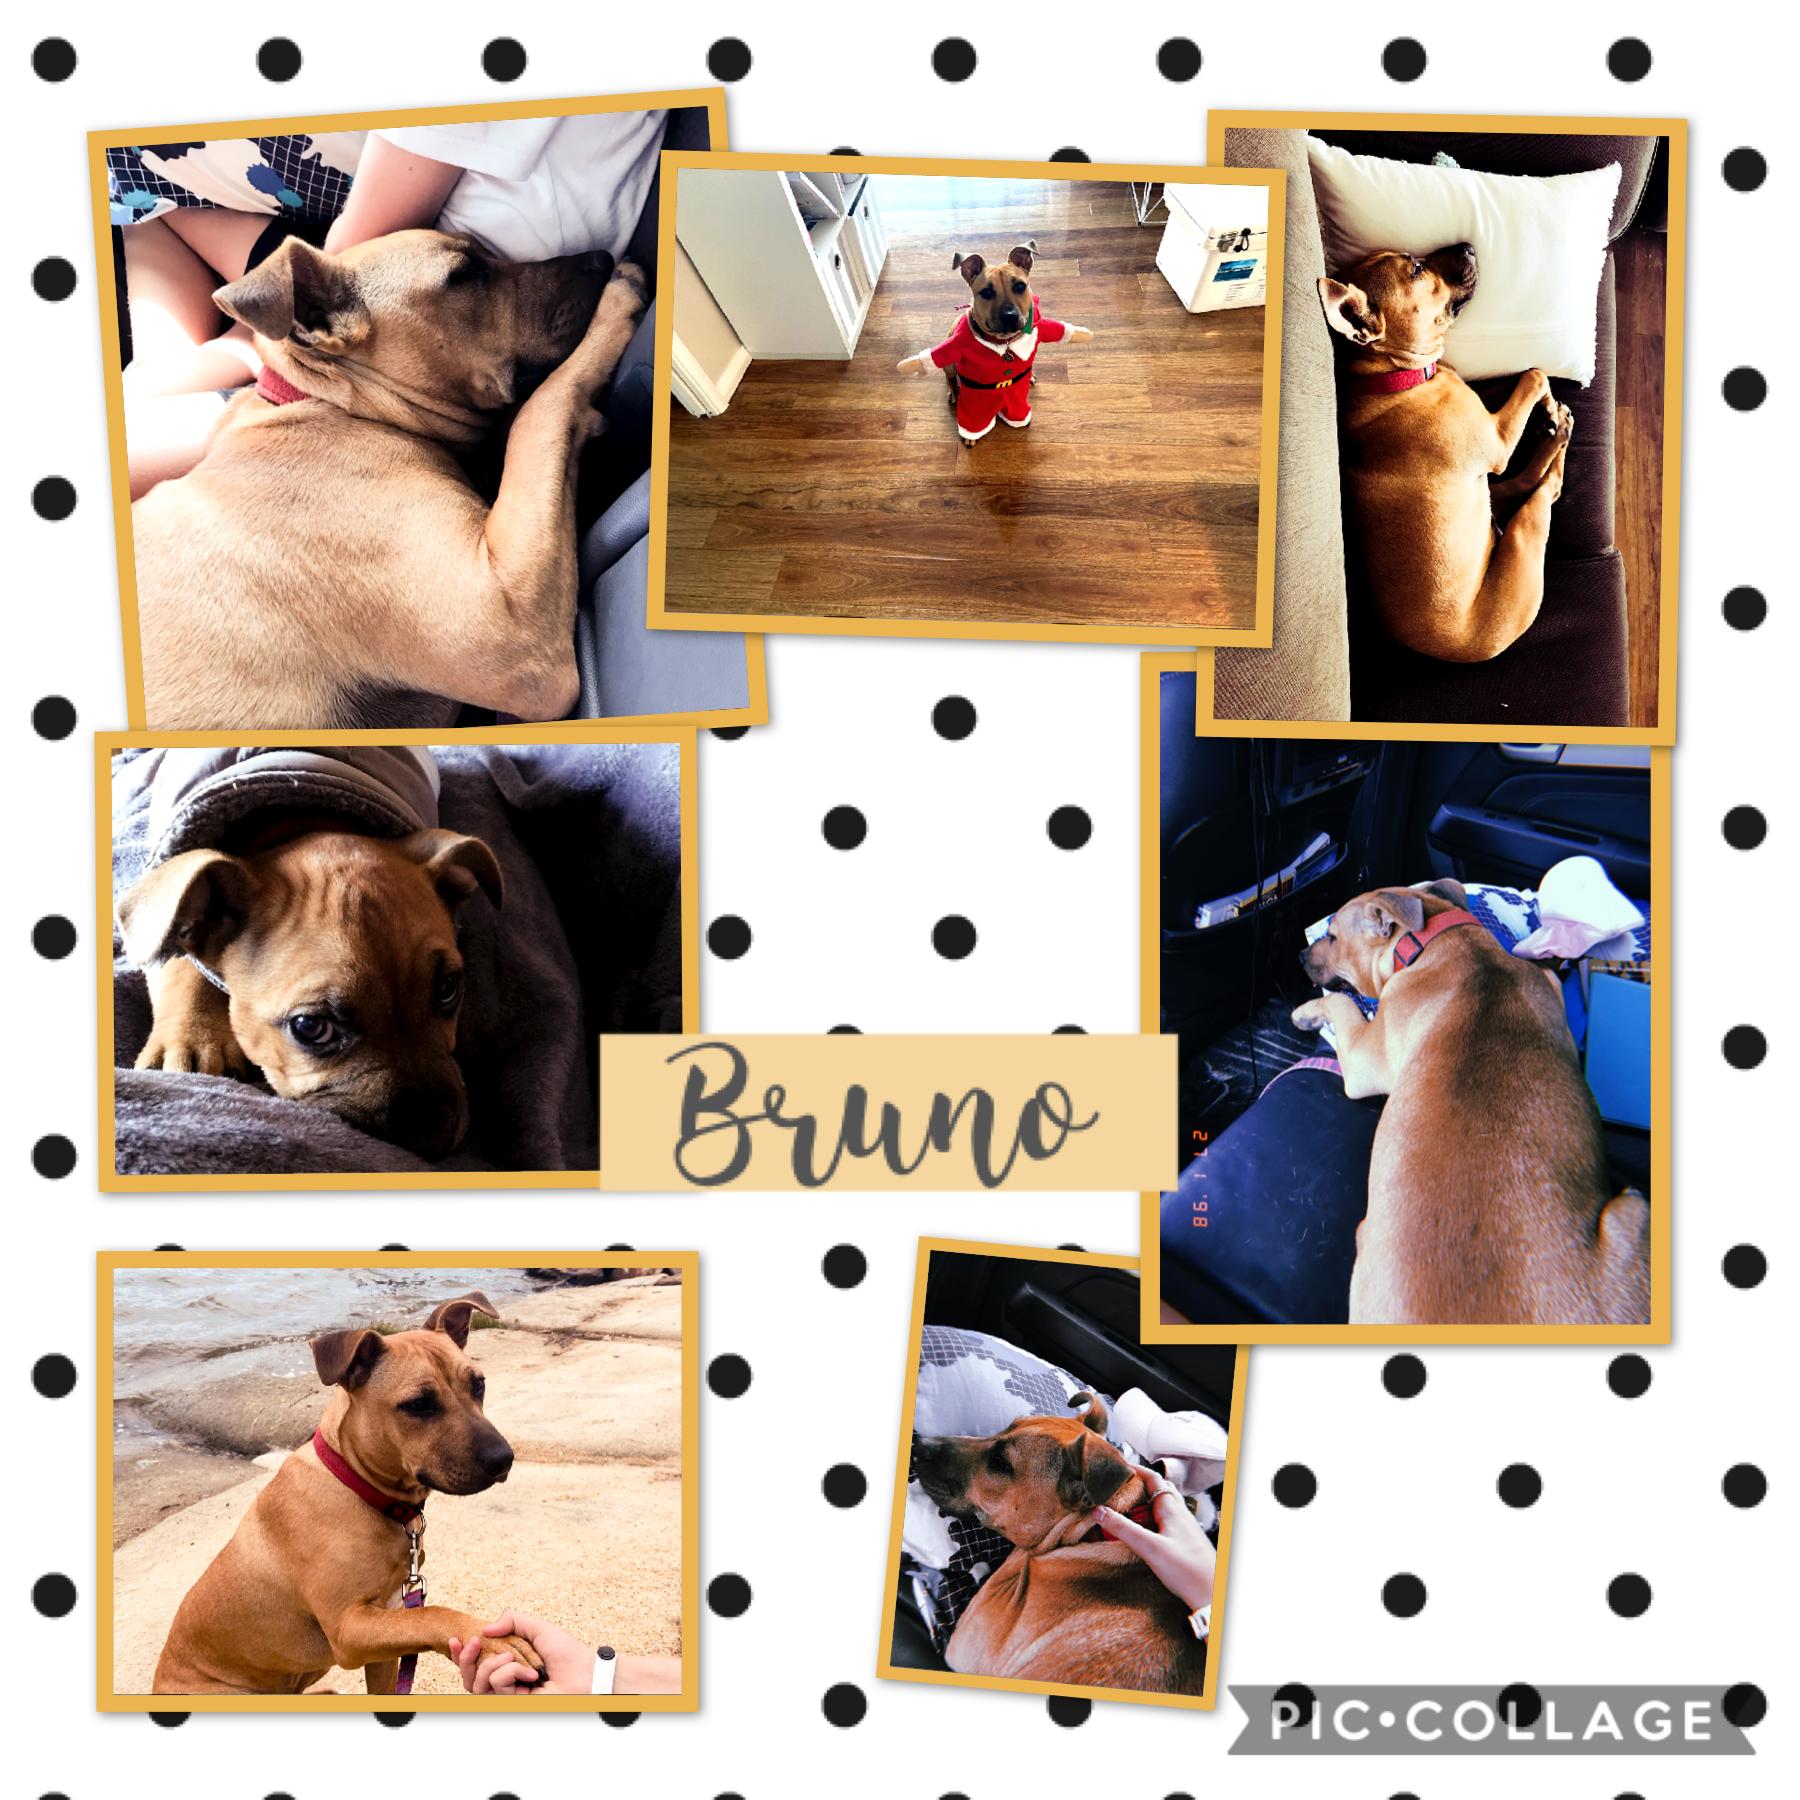 A puppy called Bruno! 